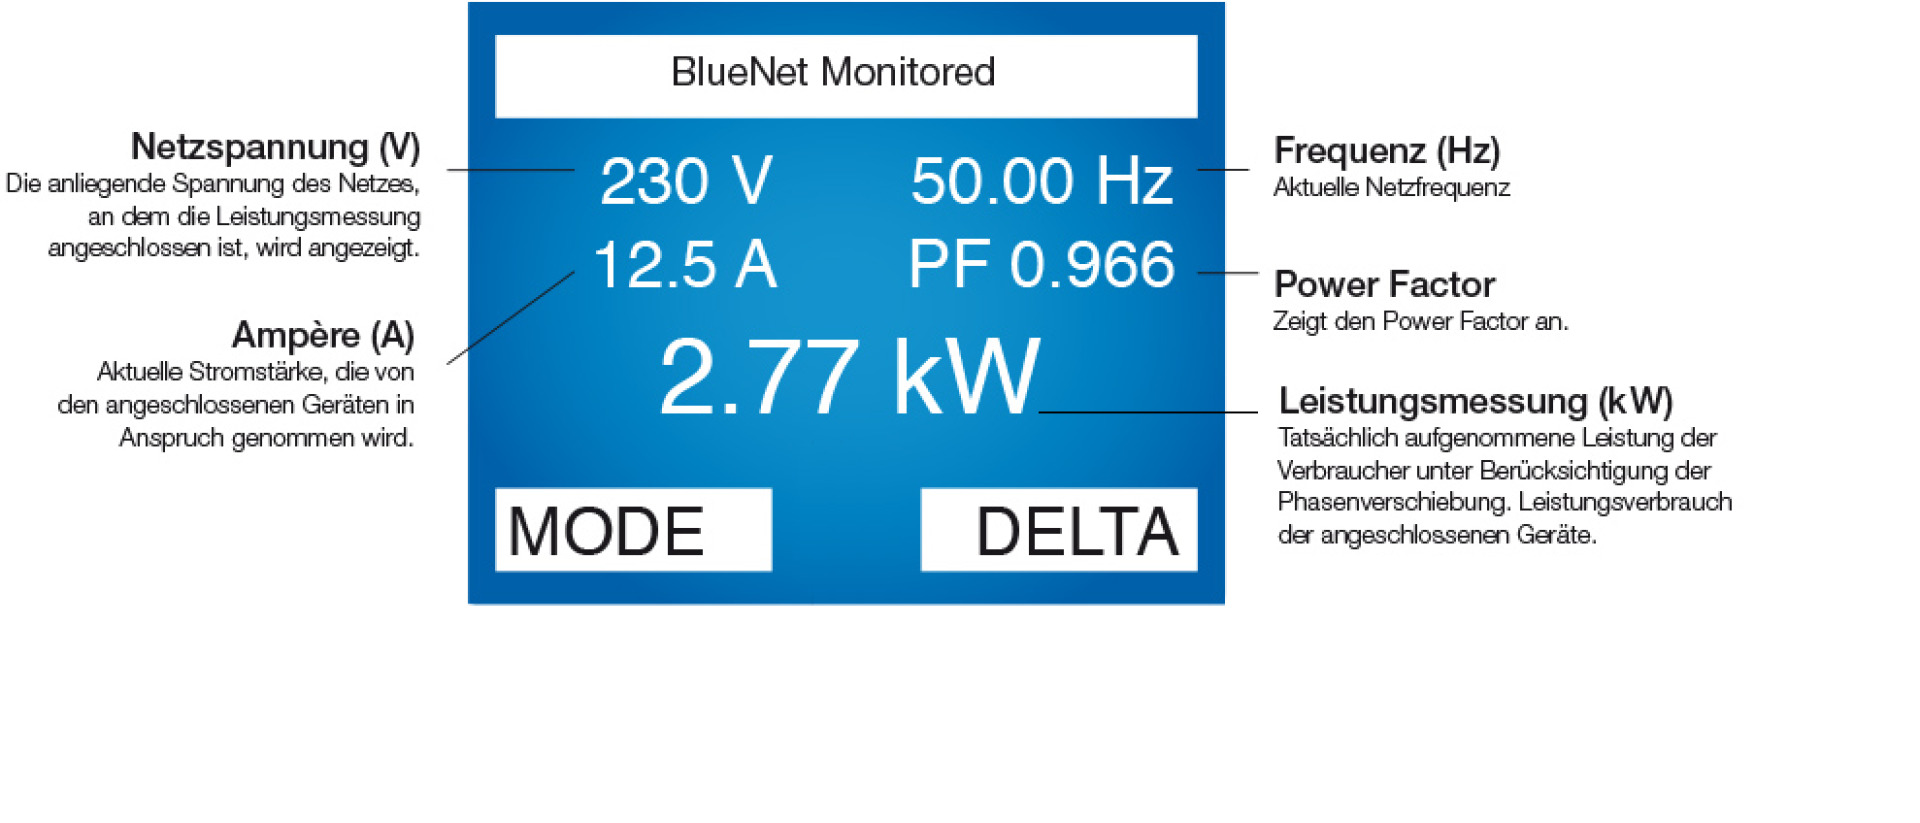 PDU Vertikal BN2000 Monitored 24 x C13 + 6 x C19 + 6 x LS